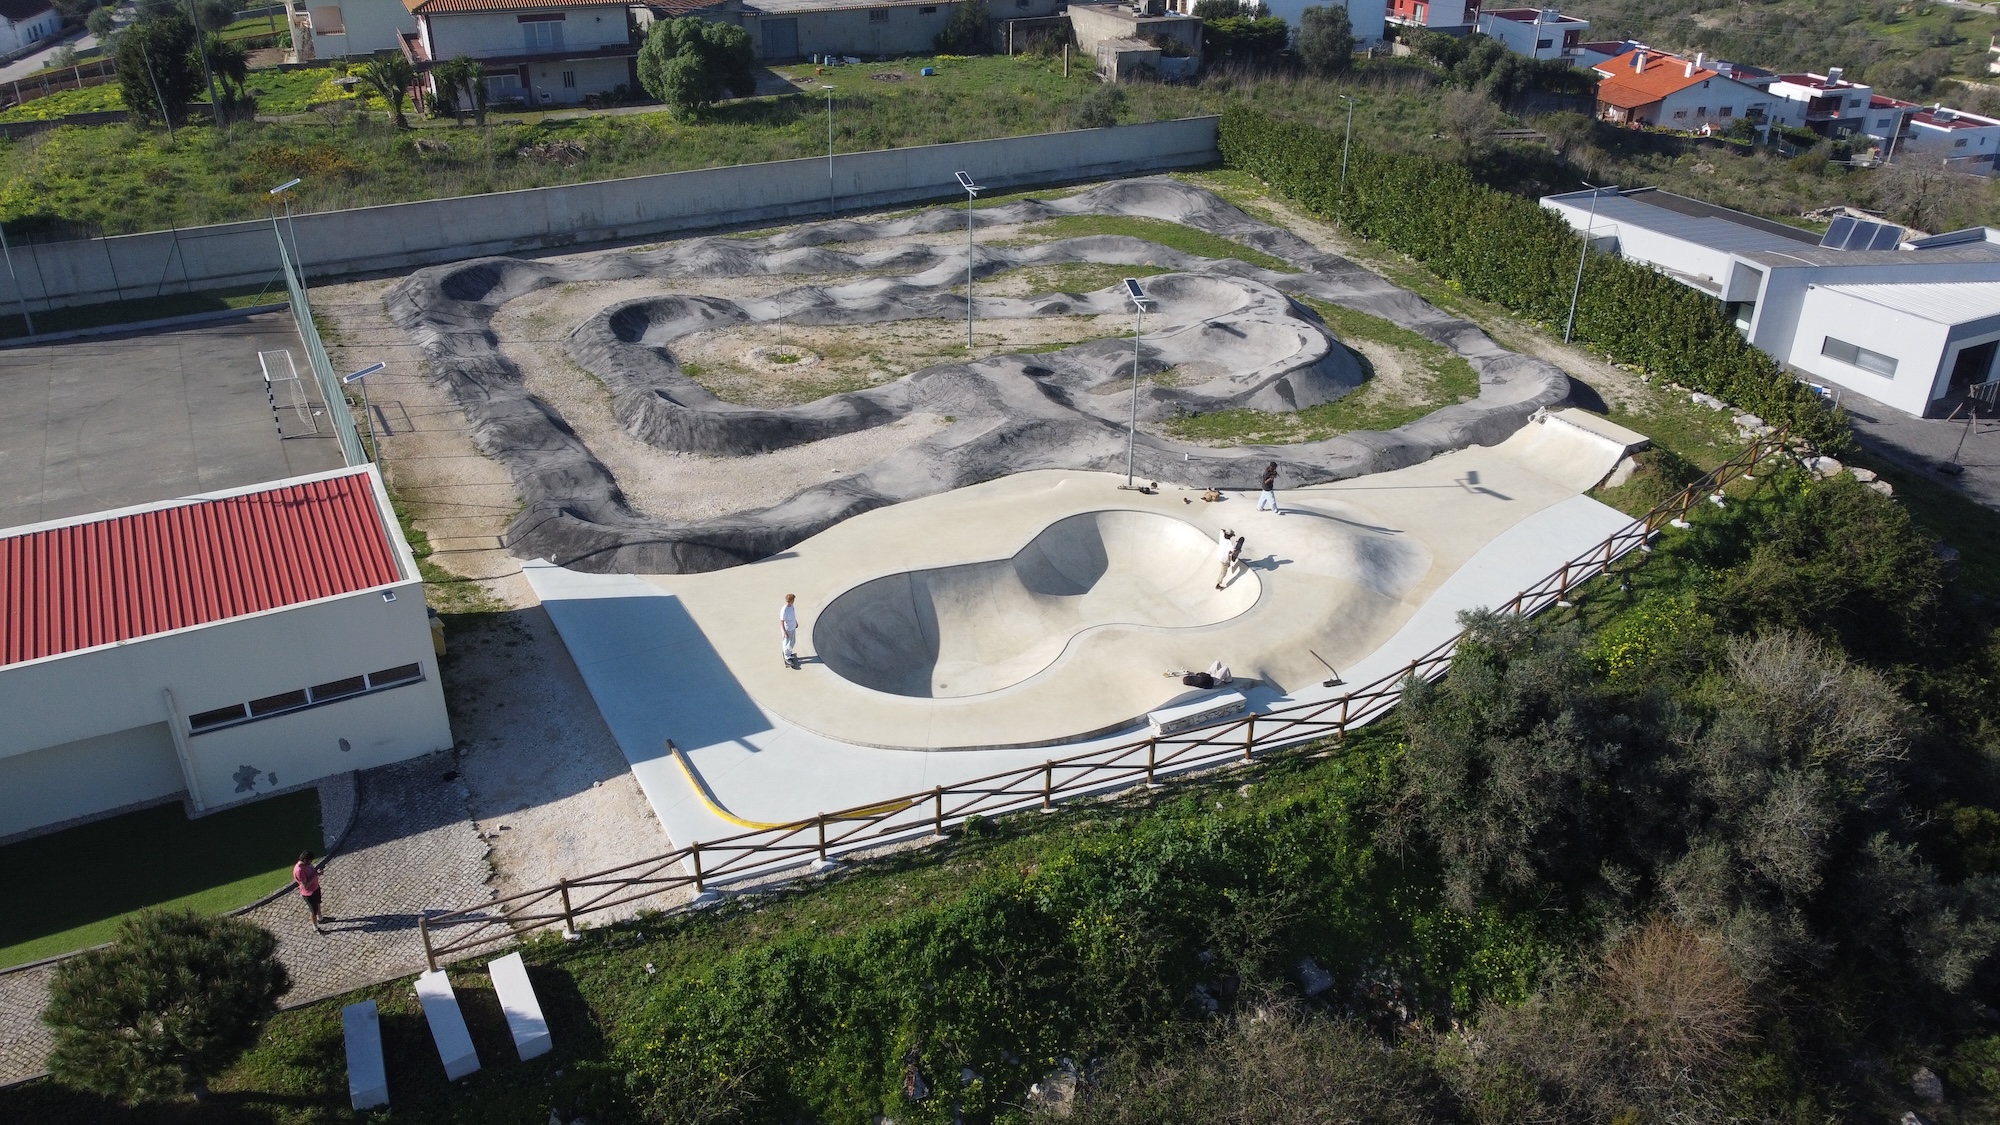 Alqueidão da Serra skatepark